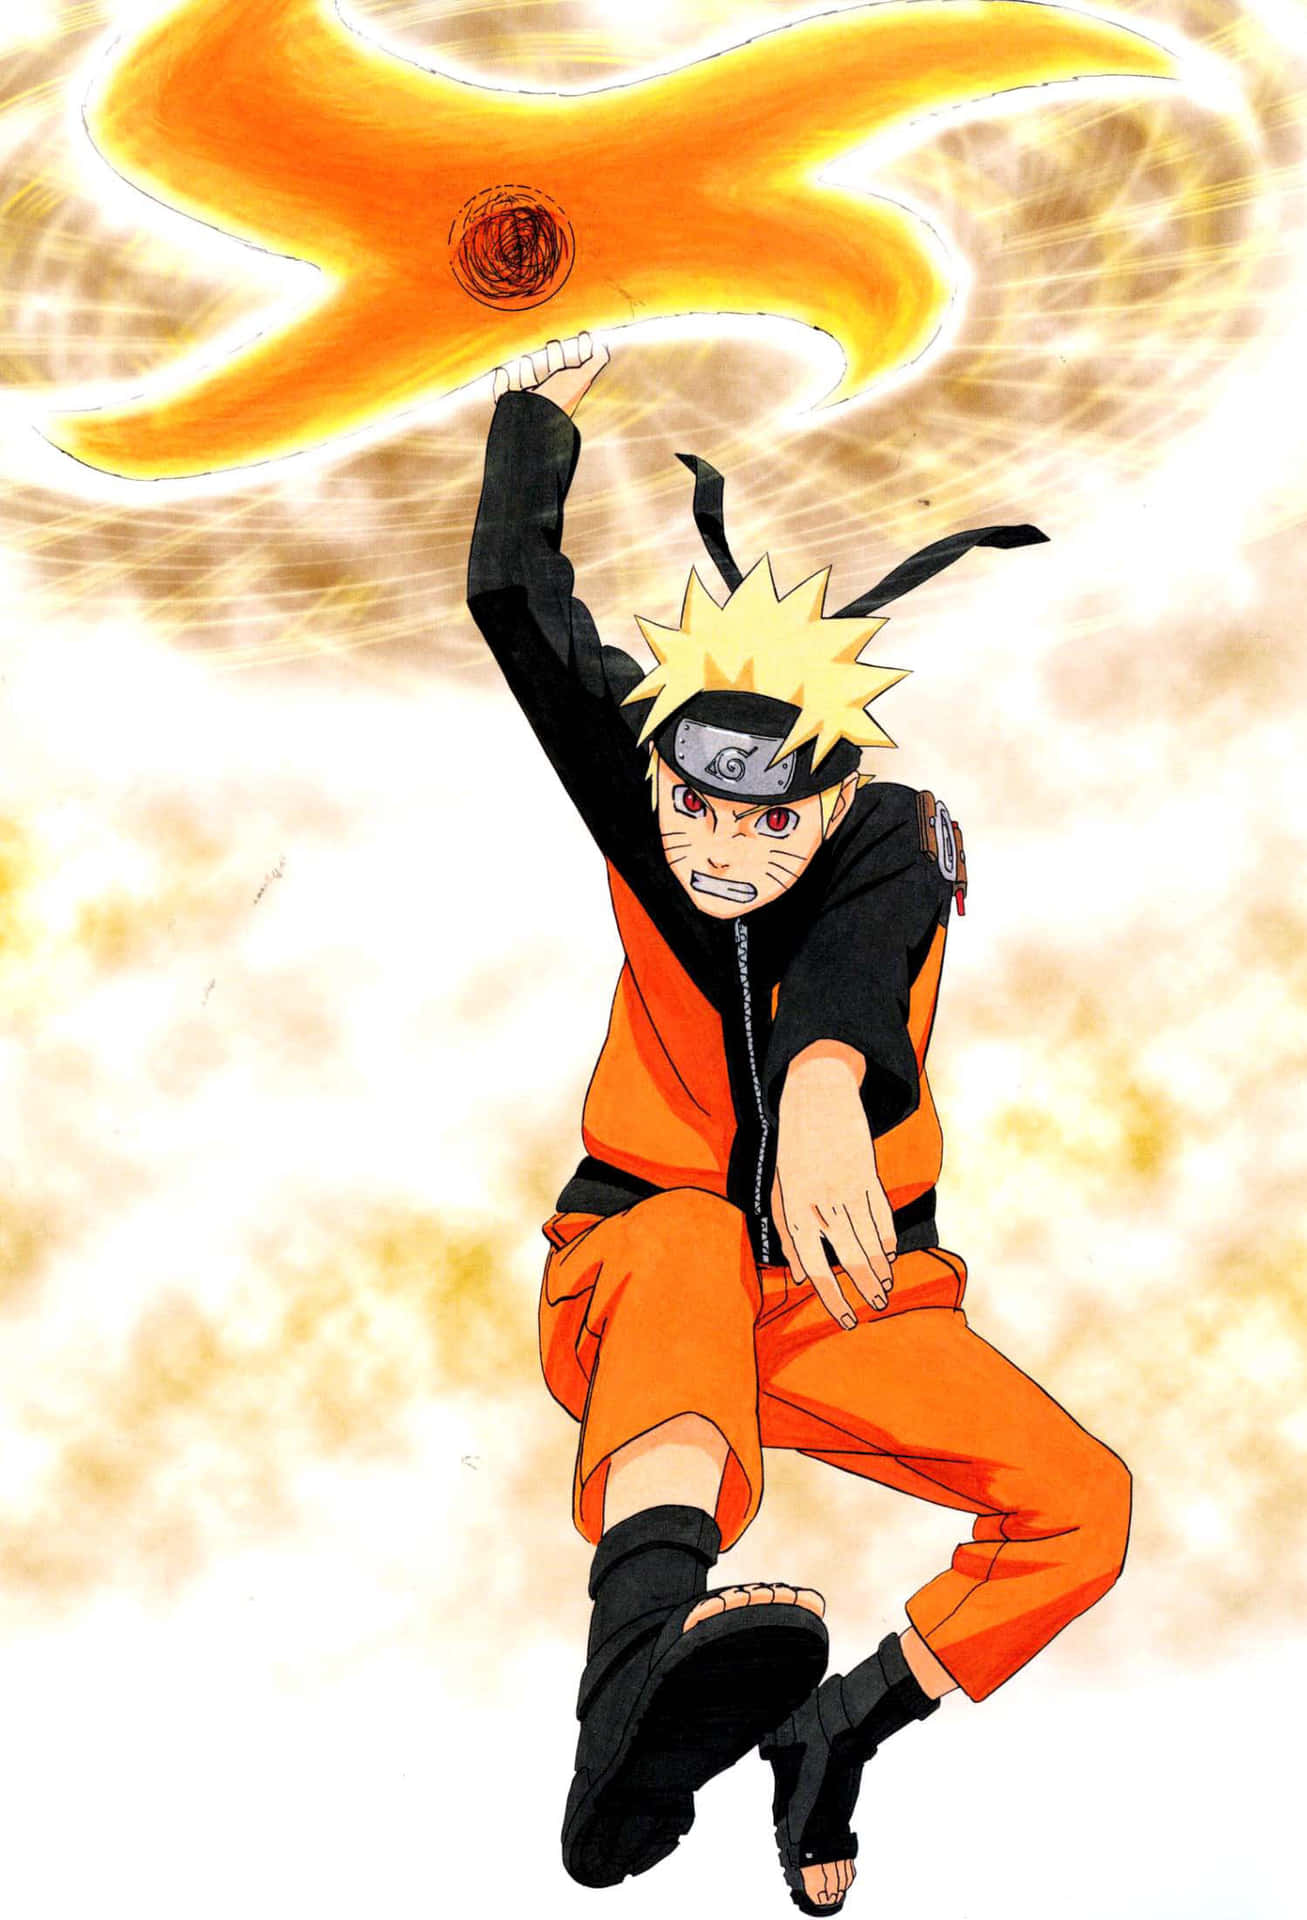 Epicaposa D'azione Di Naruto Su Uno Sfondo Mistico